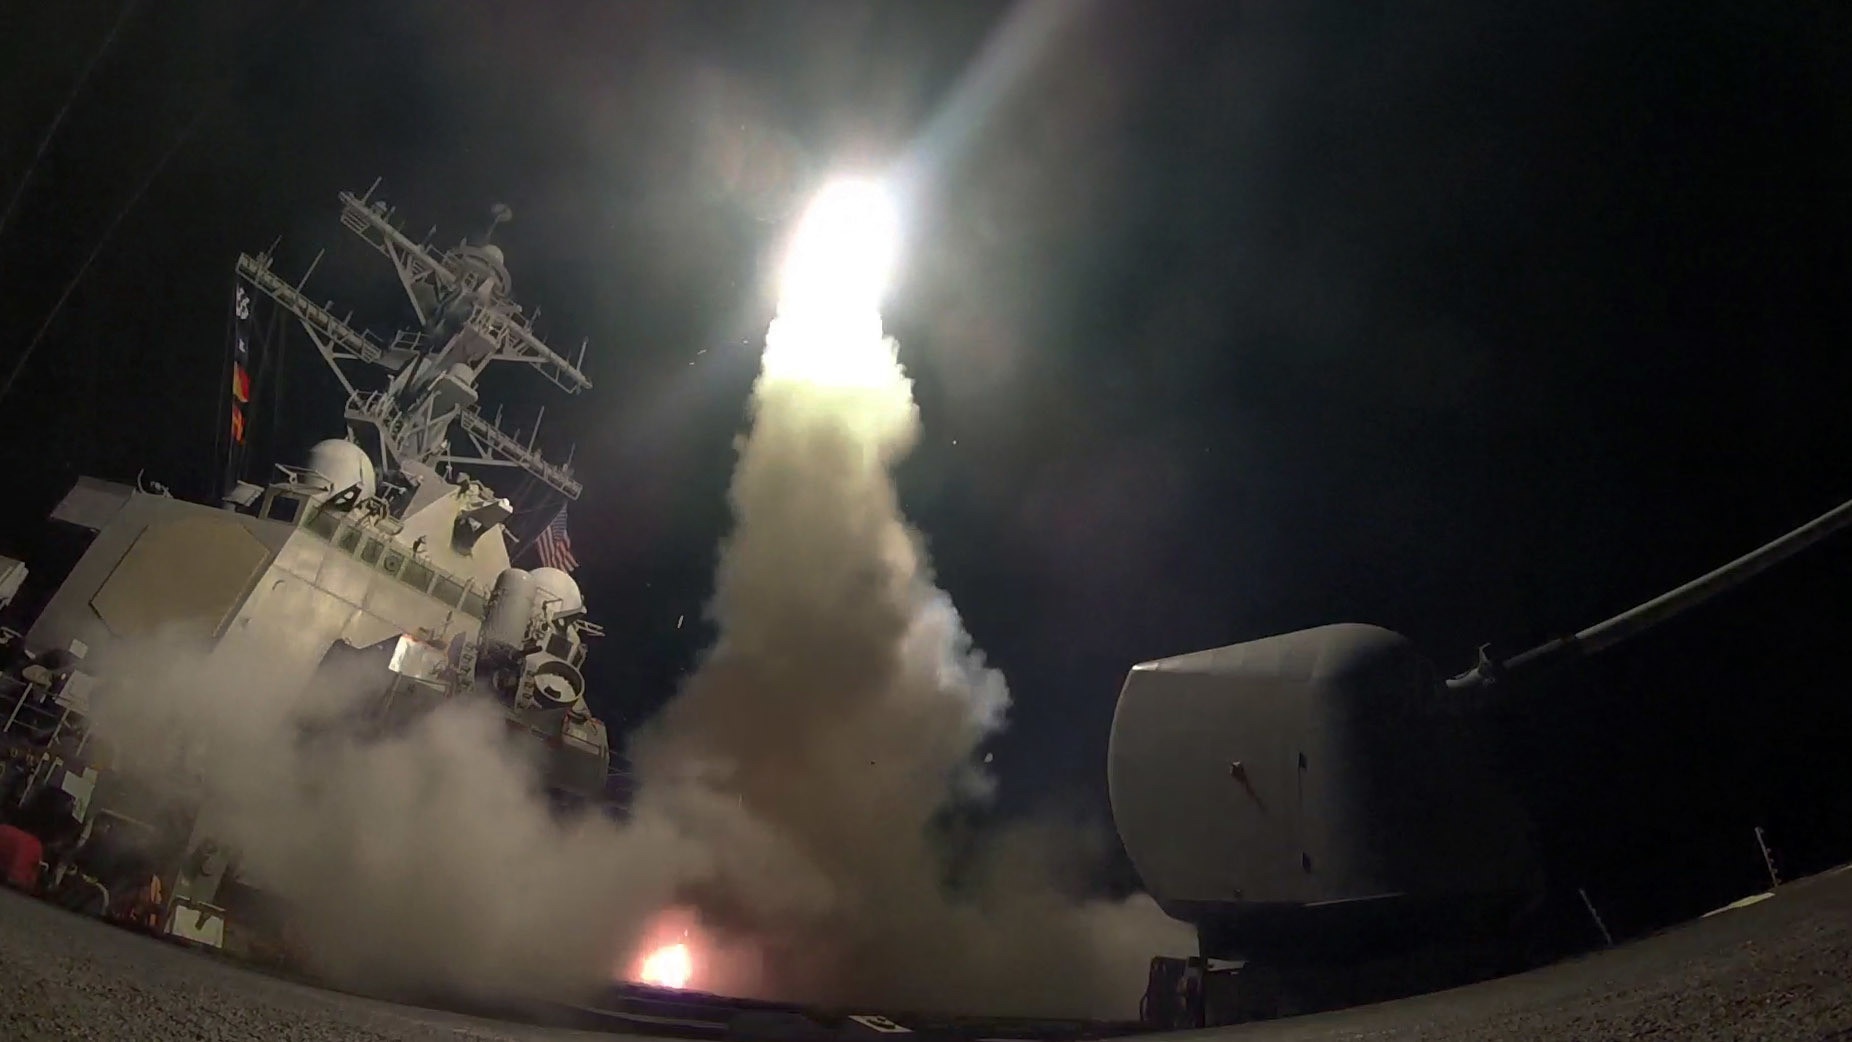 آمریکا با چه موشکی به سوریه حمله کرد؟/۵۹ تاماهاک ۳ میلیون دلاری!